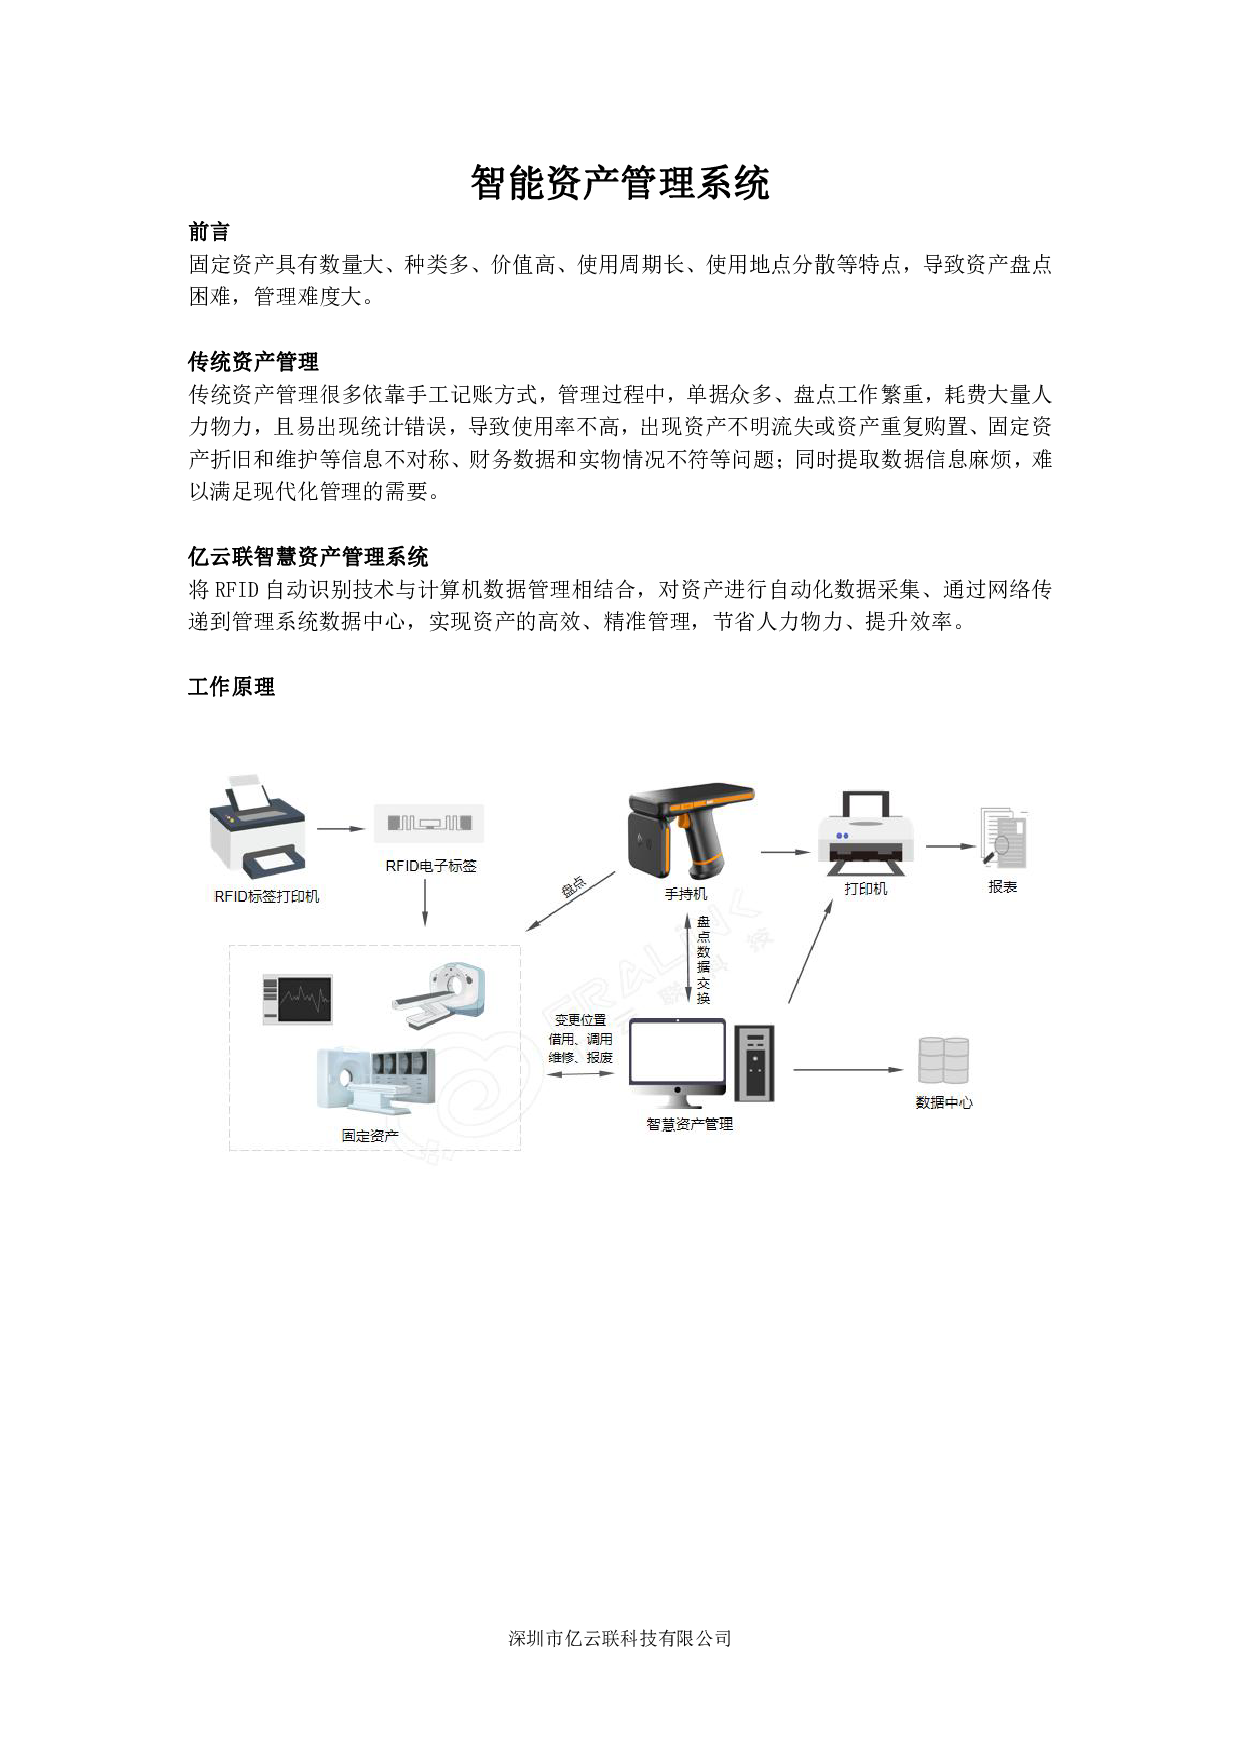 RFID智能资产管理系统图片